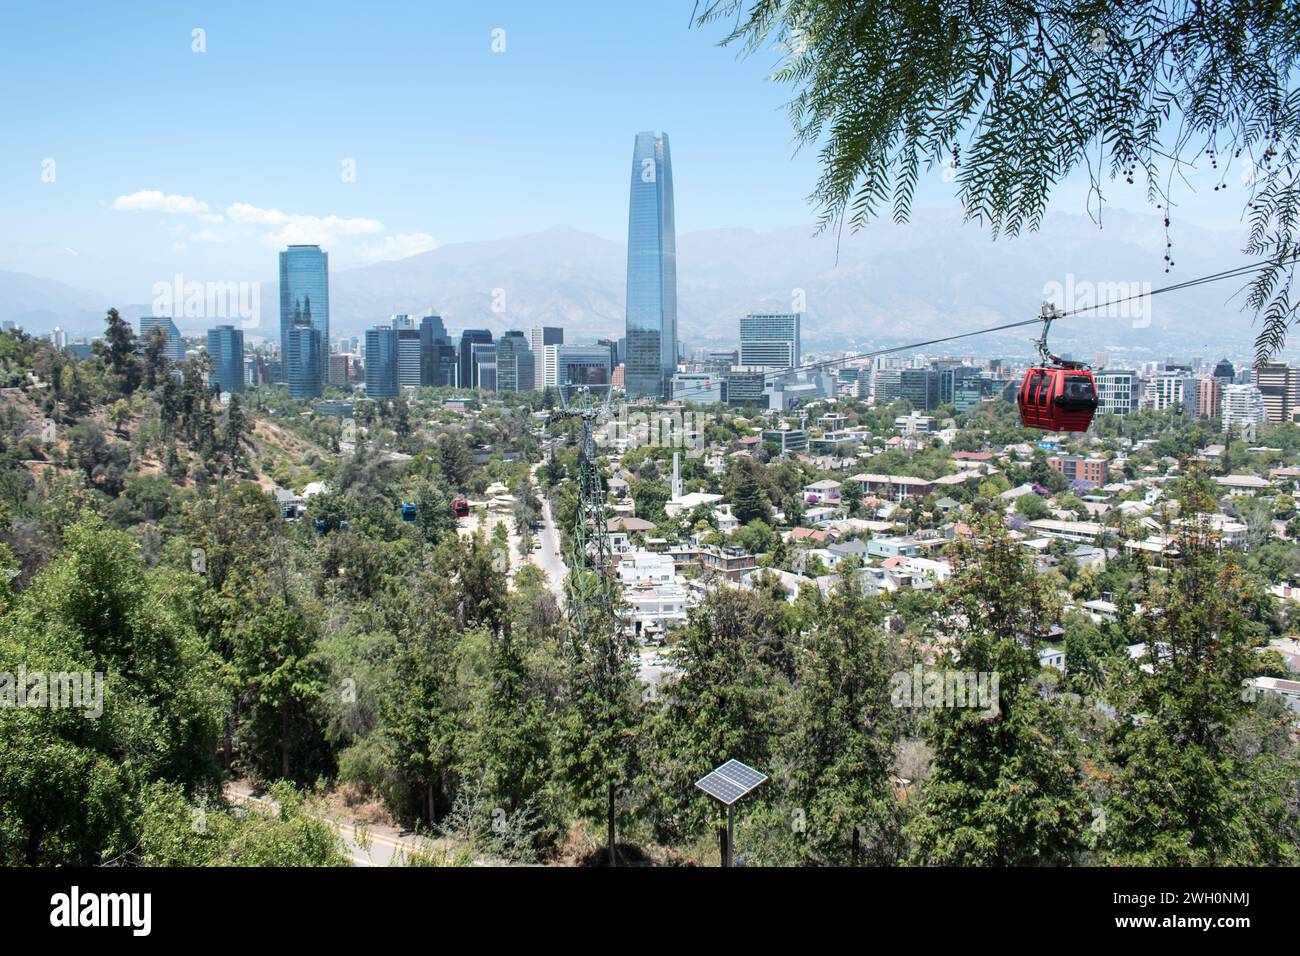 Paesaggio urbano dal Parco metropolitano di Santiago durante l'estate, con l'iconica Torre Costanera e la funivia in lontananza. Foto Stock